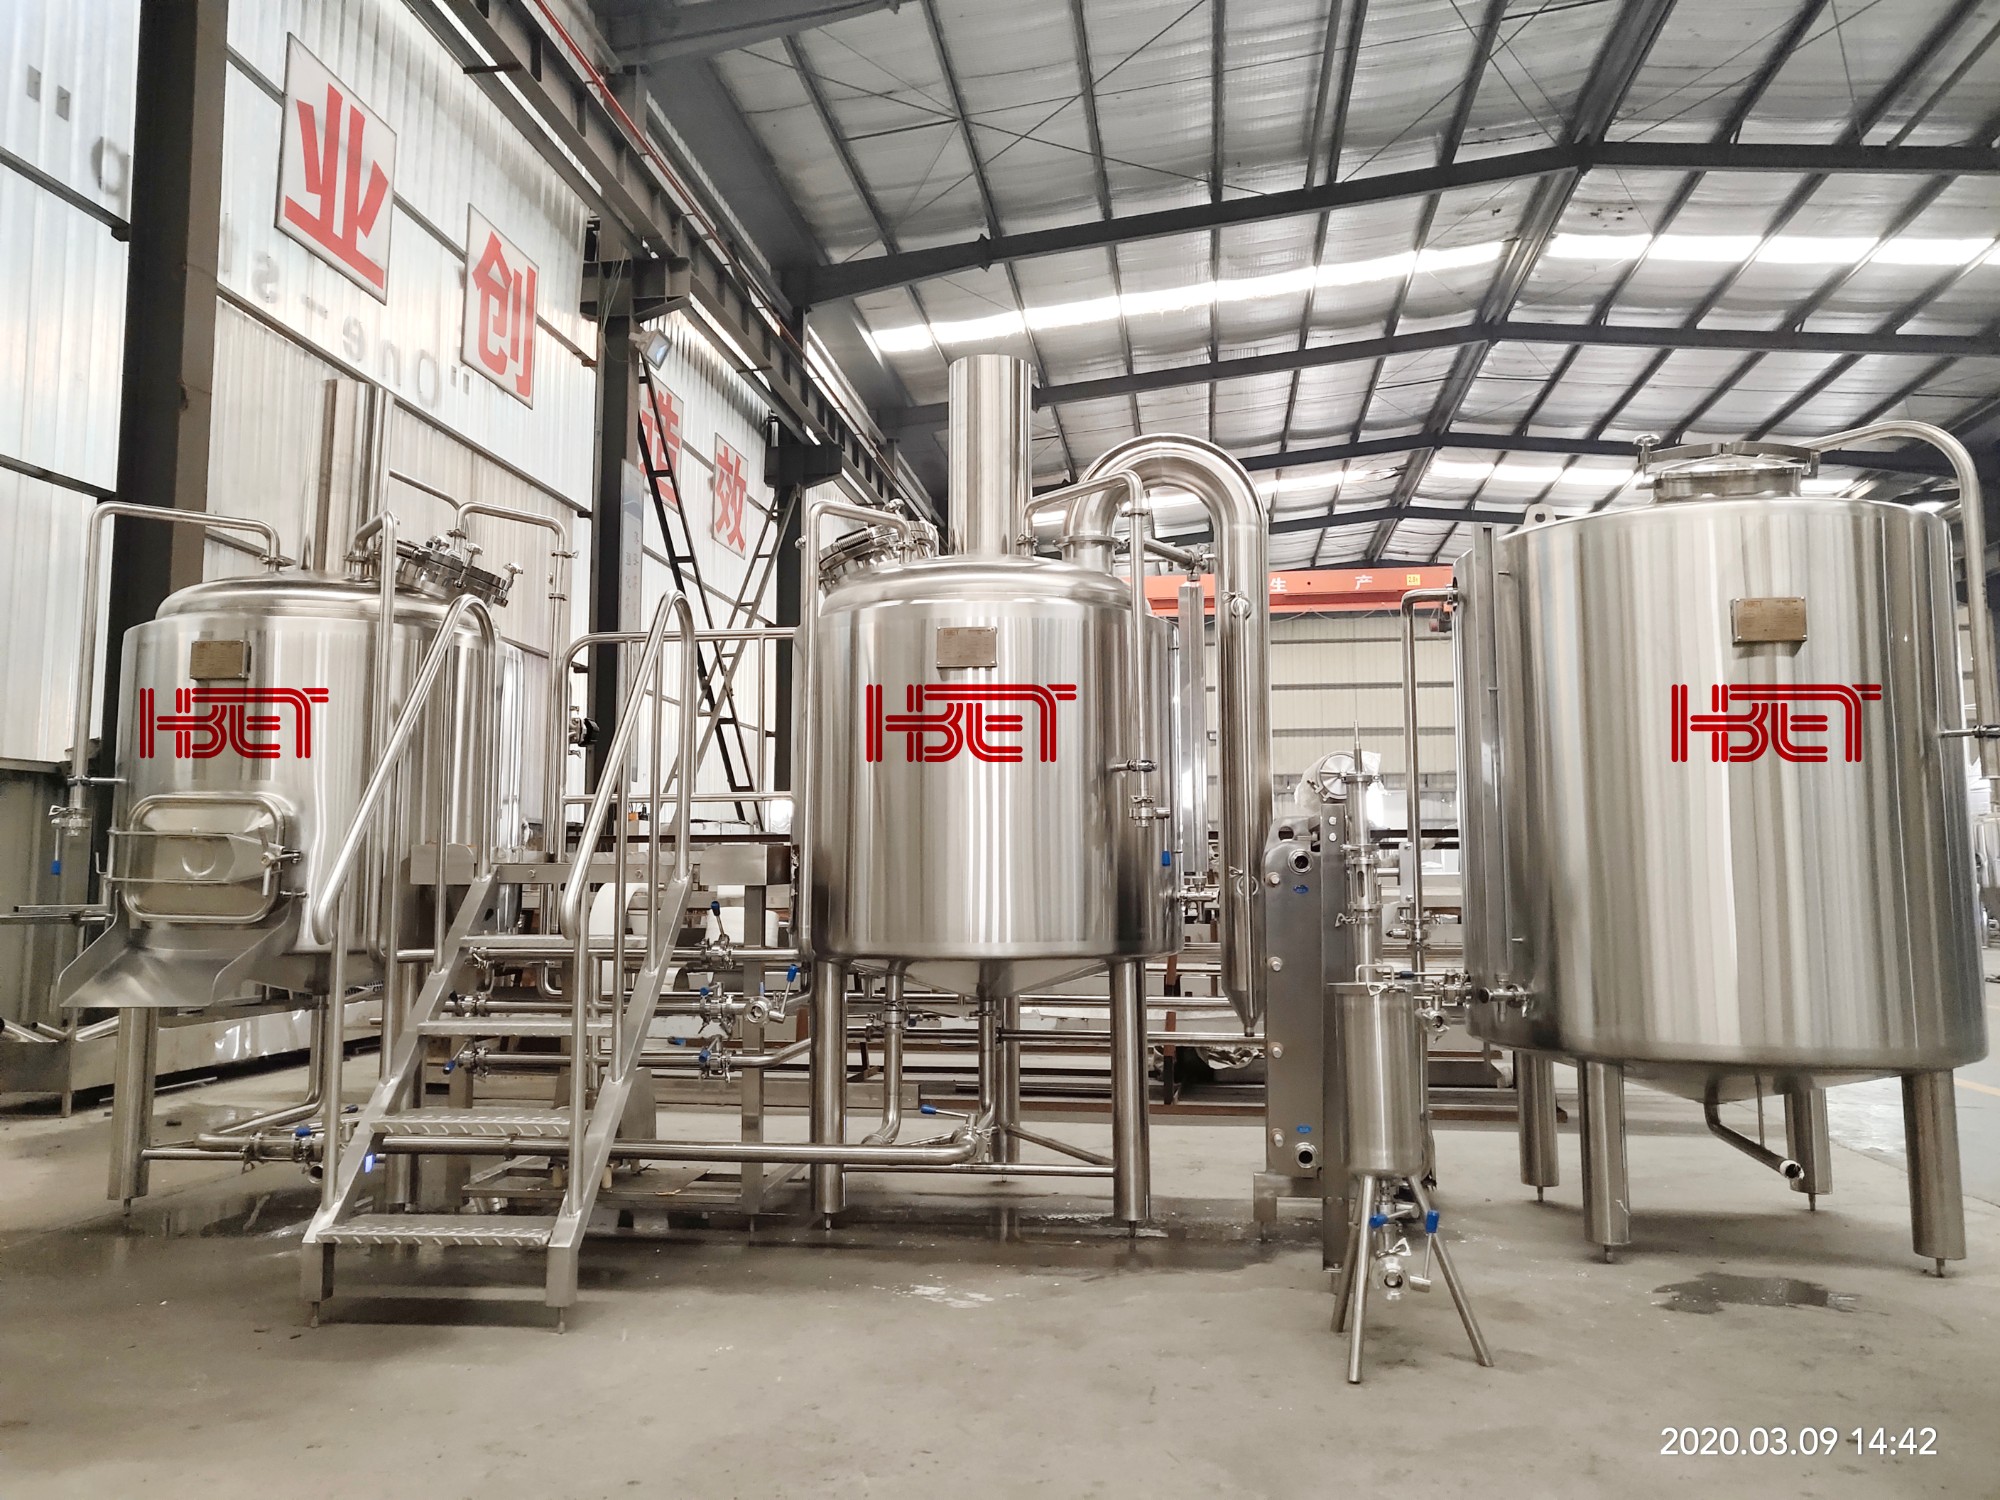 500L пълна пивоварна оборудване се очаква да пристигне в Констанца пристанище май